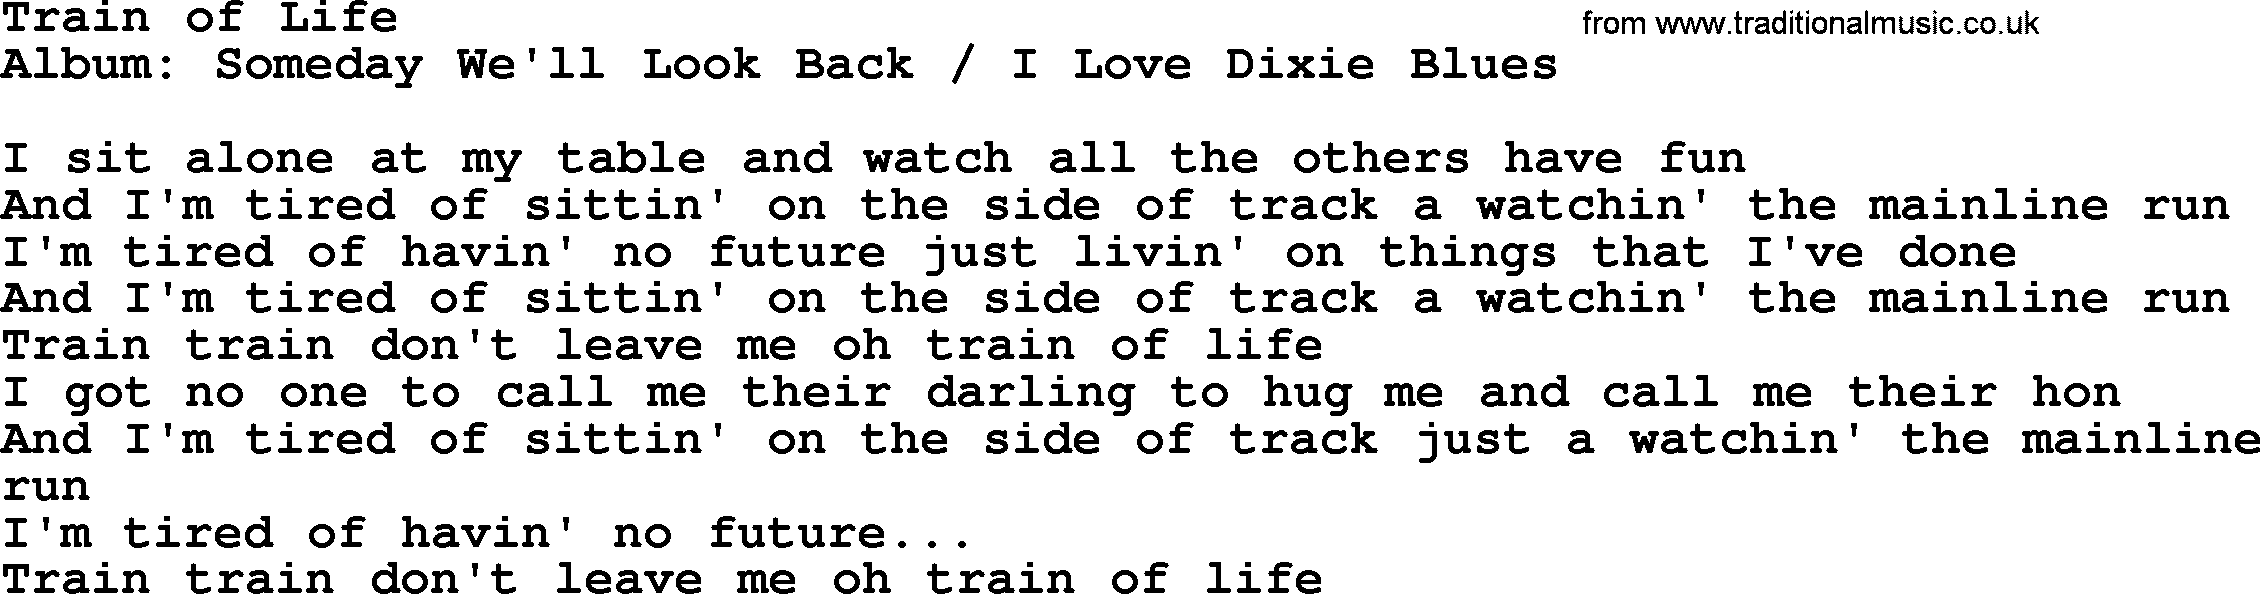 Merle Haggard song: Train Of Life, lyrics.